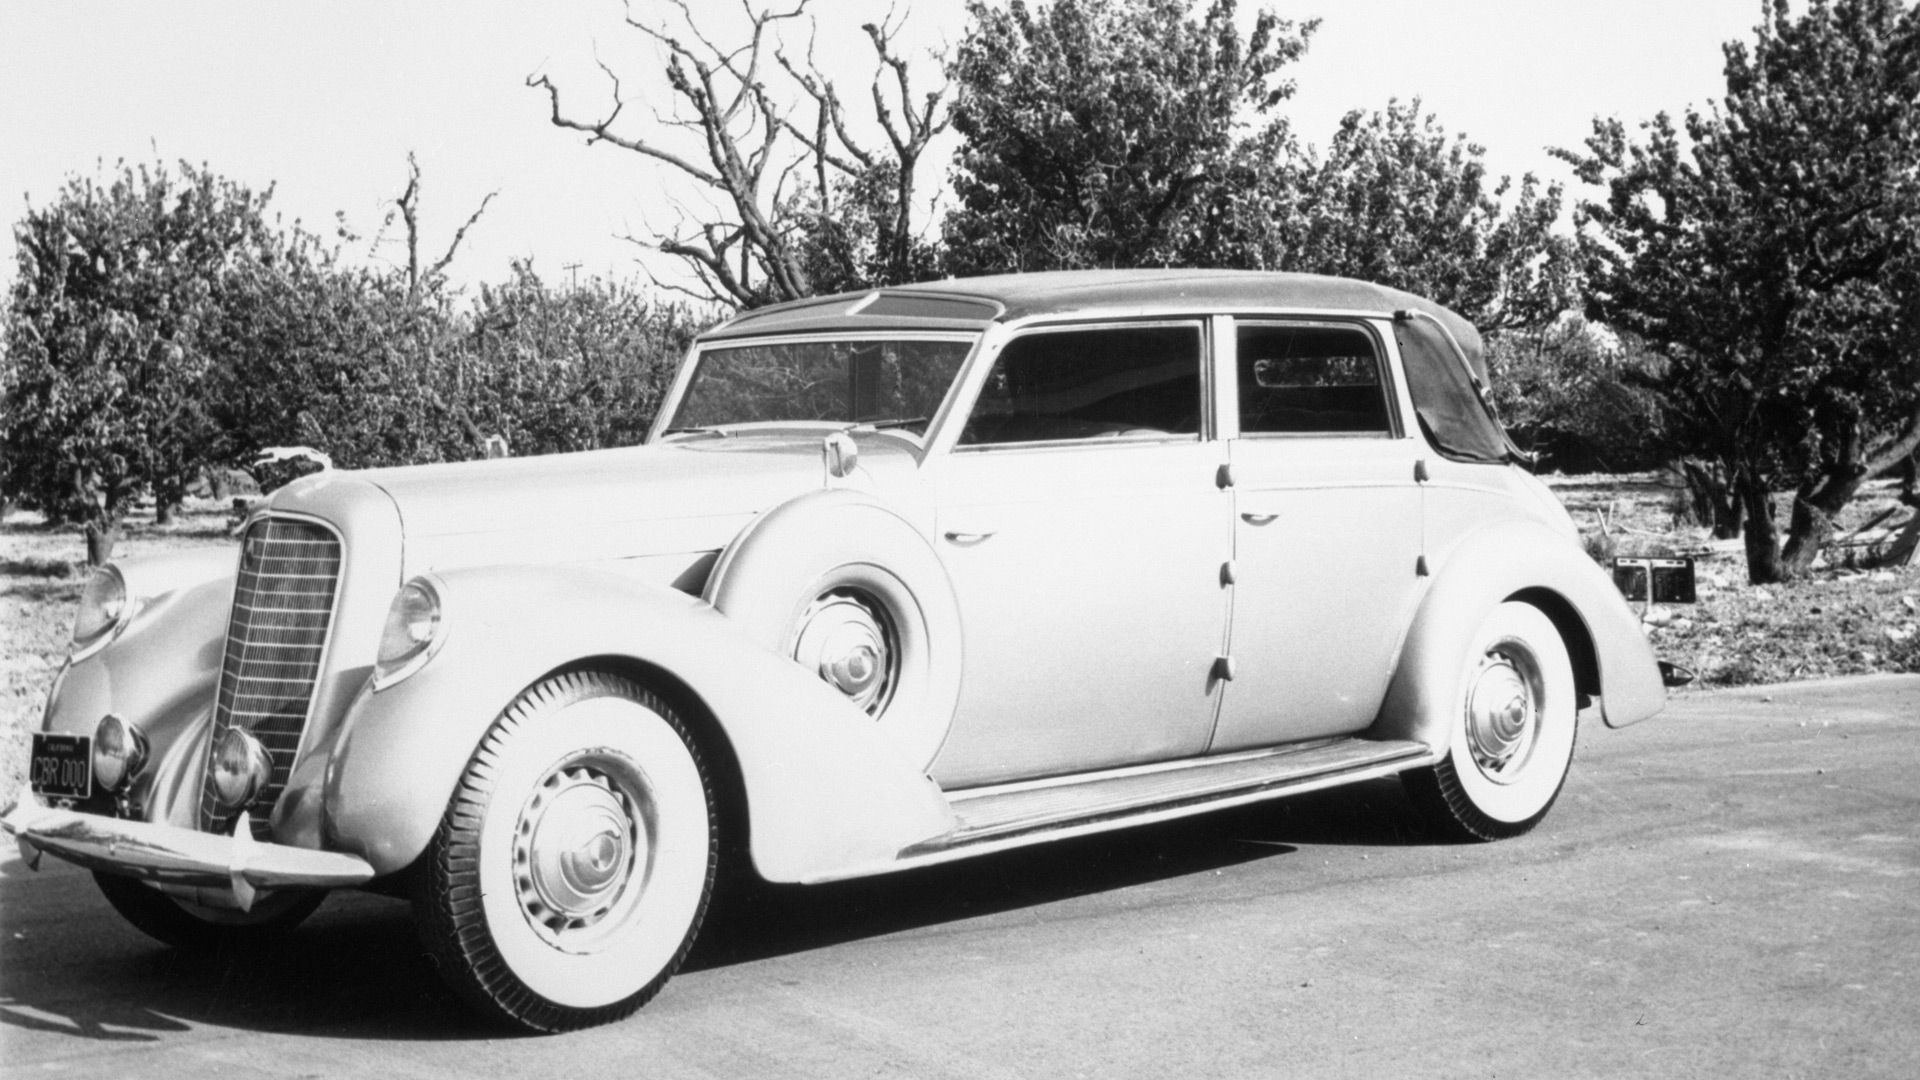 1937 Lincoln Model K Touring Car by Brunn